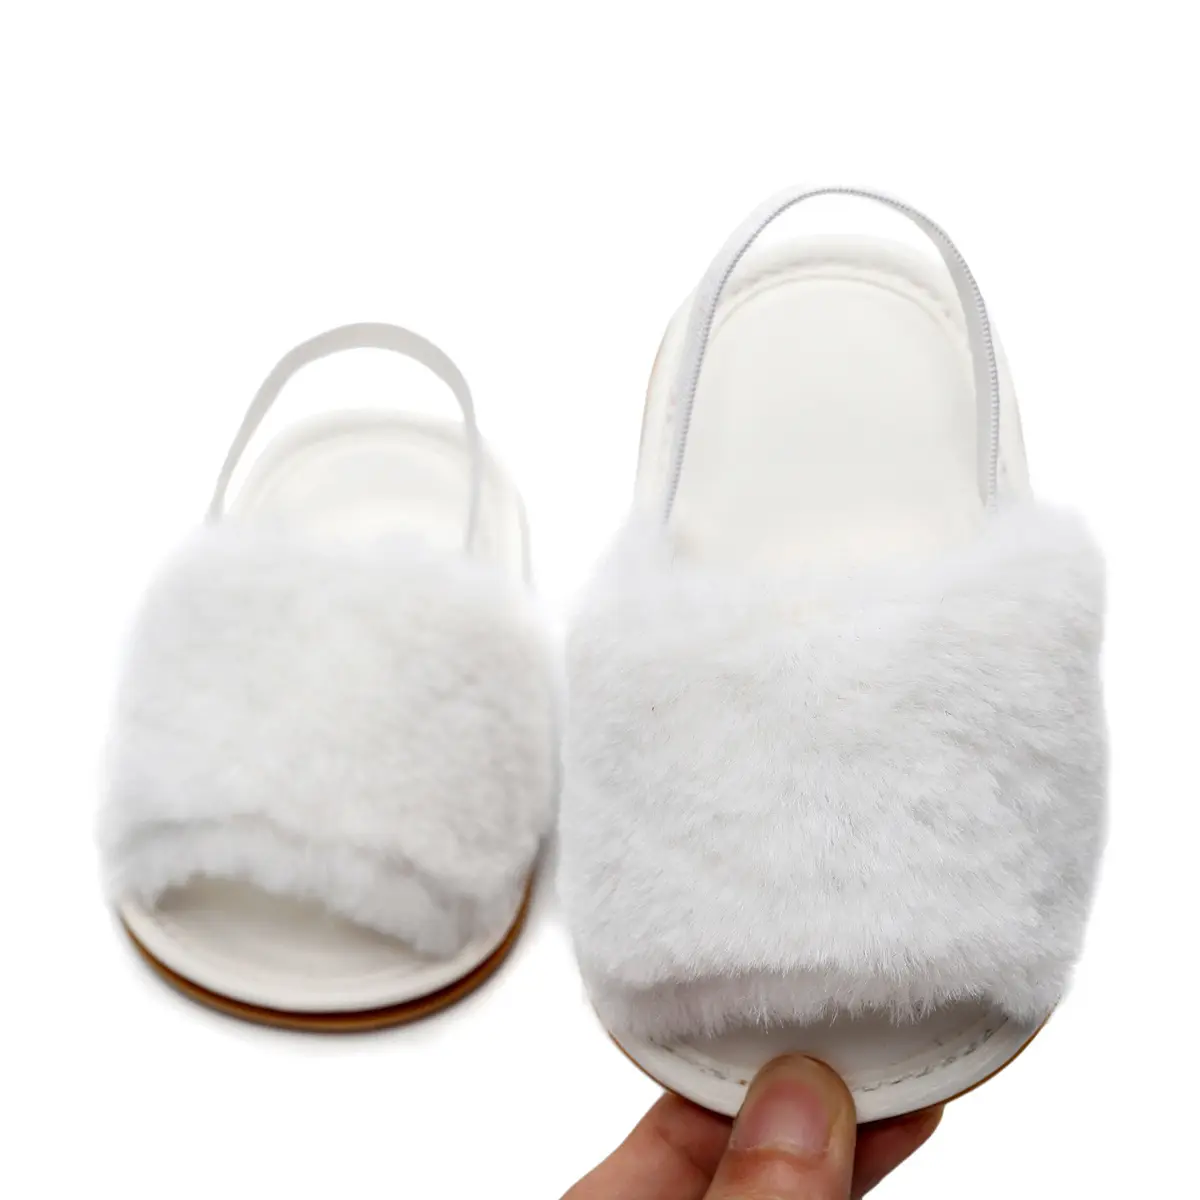 गर्मियों की चप्पल लड़कियों ने लड़कों के पहले वॉकर नवजात शिशु के छोटे बच्चे के सैंडल बच्चे के जूते प्यारे प्यारे प्यारे फररी चप्पल चप्पल चप्पल चप्पल